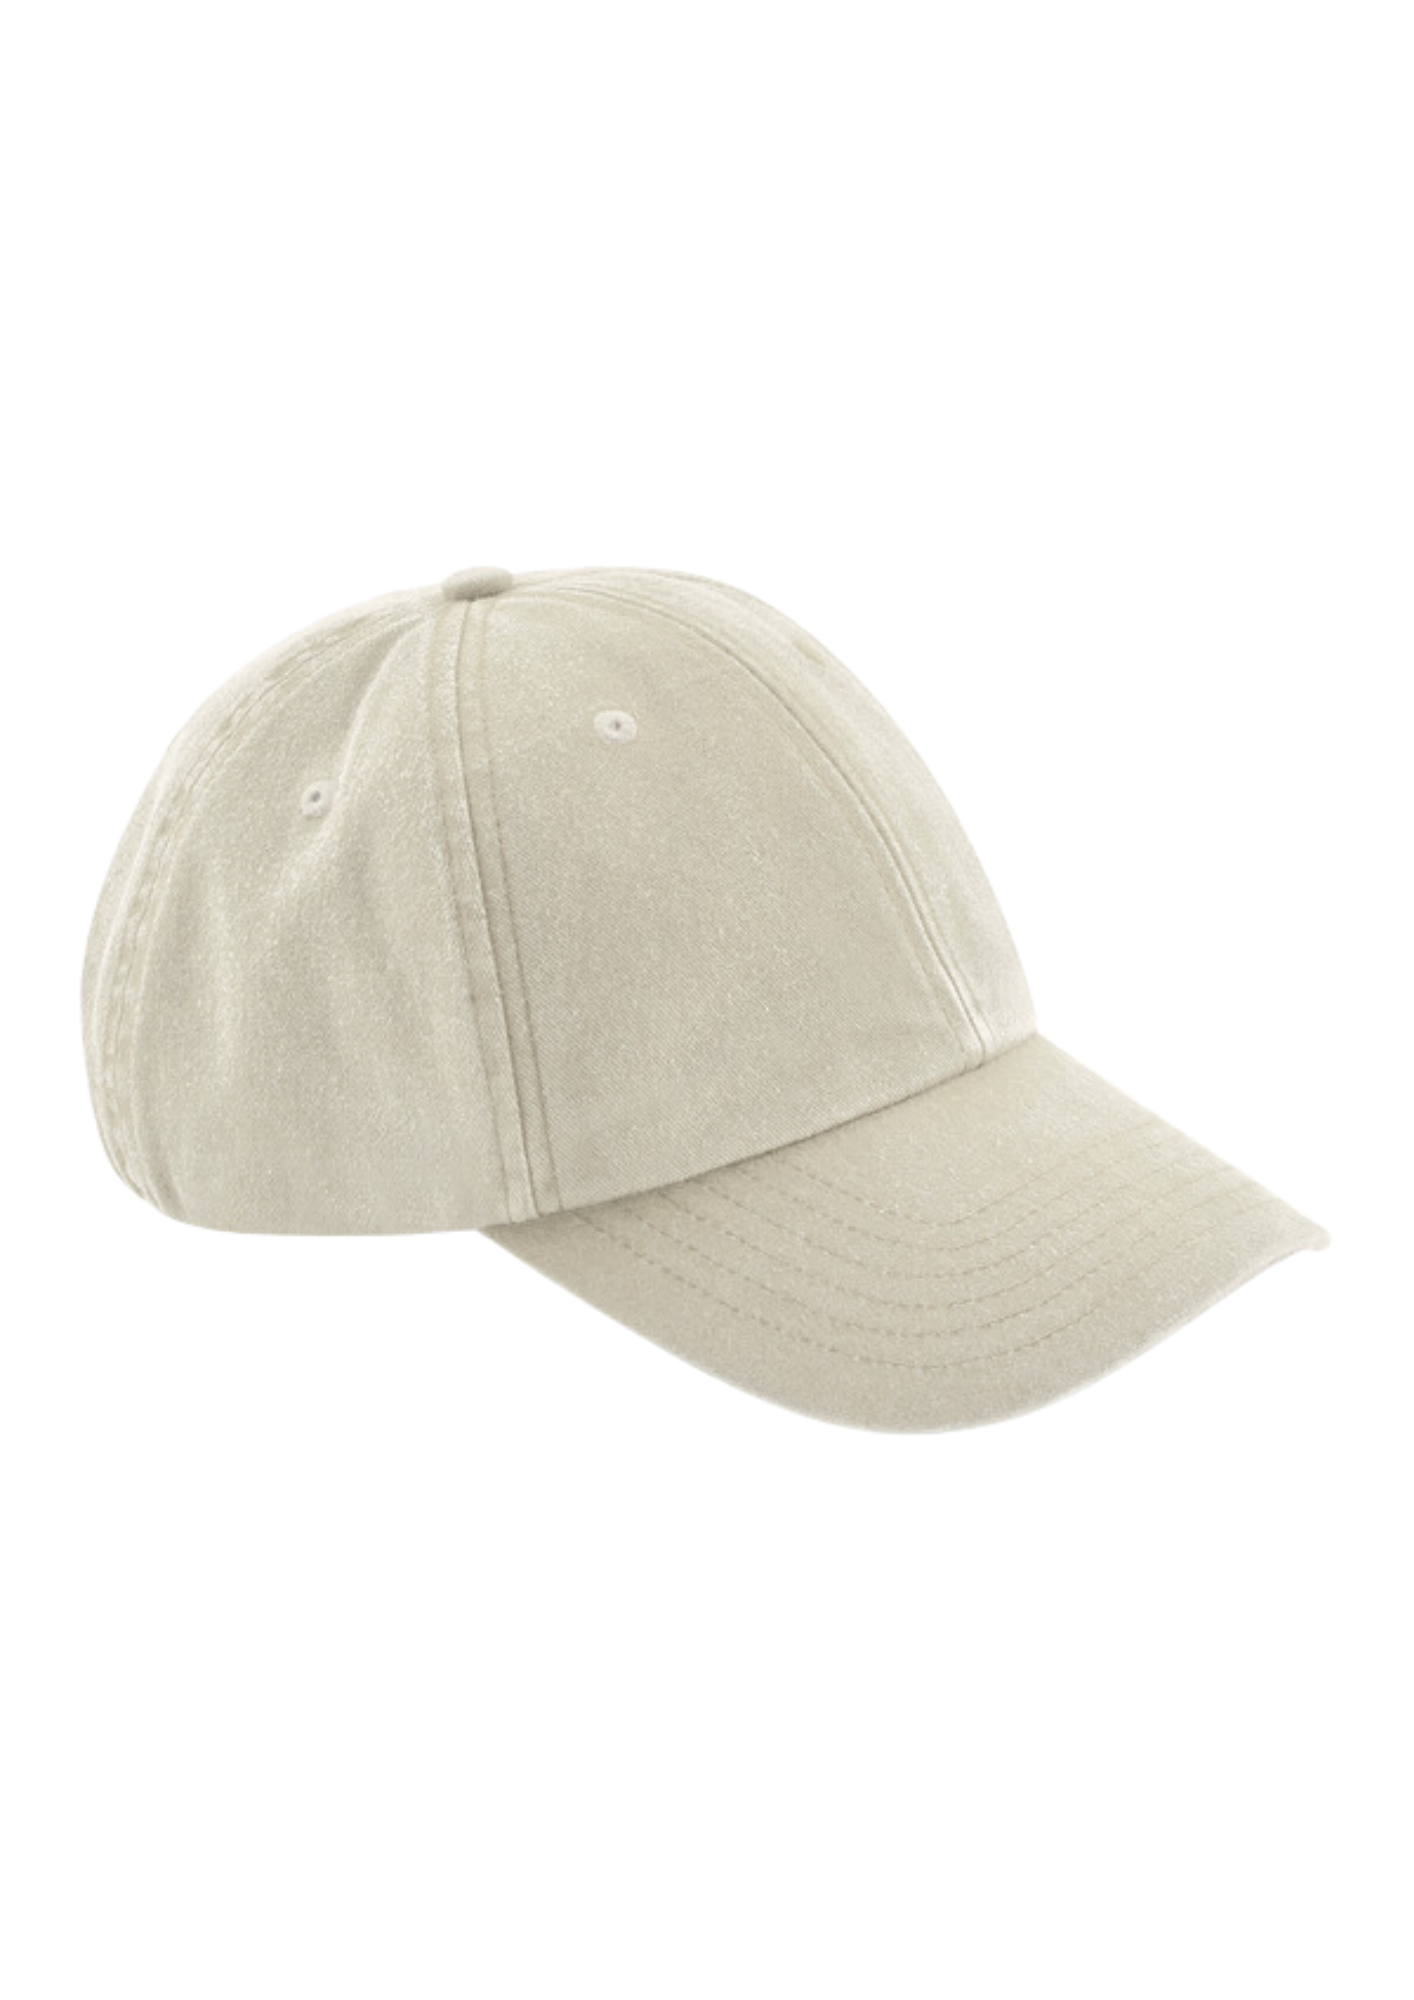 Low profile vintage dad cap